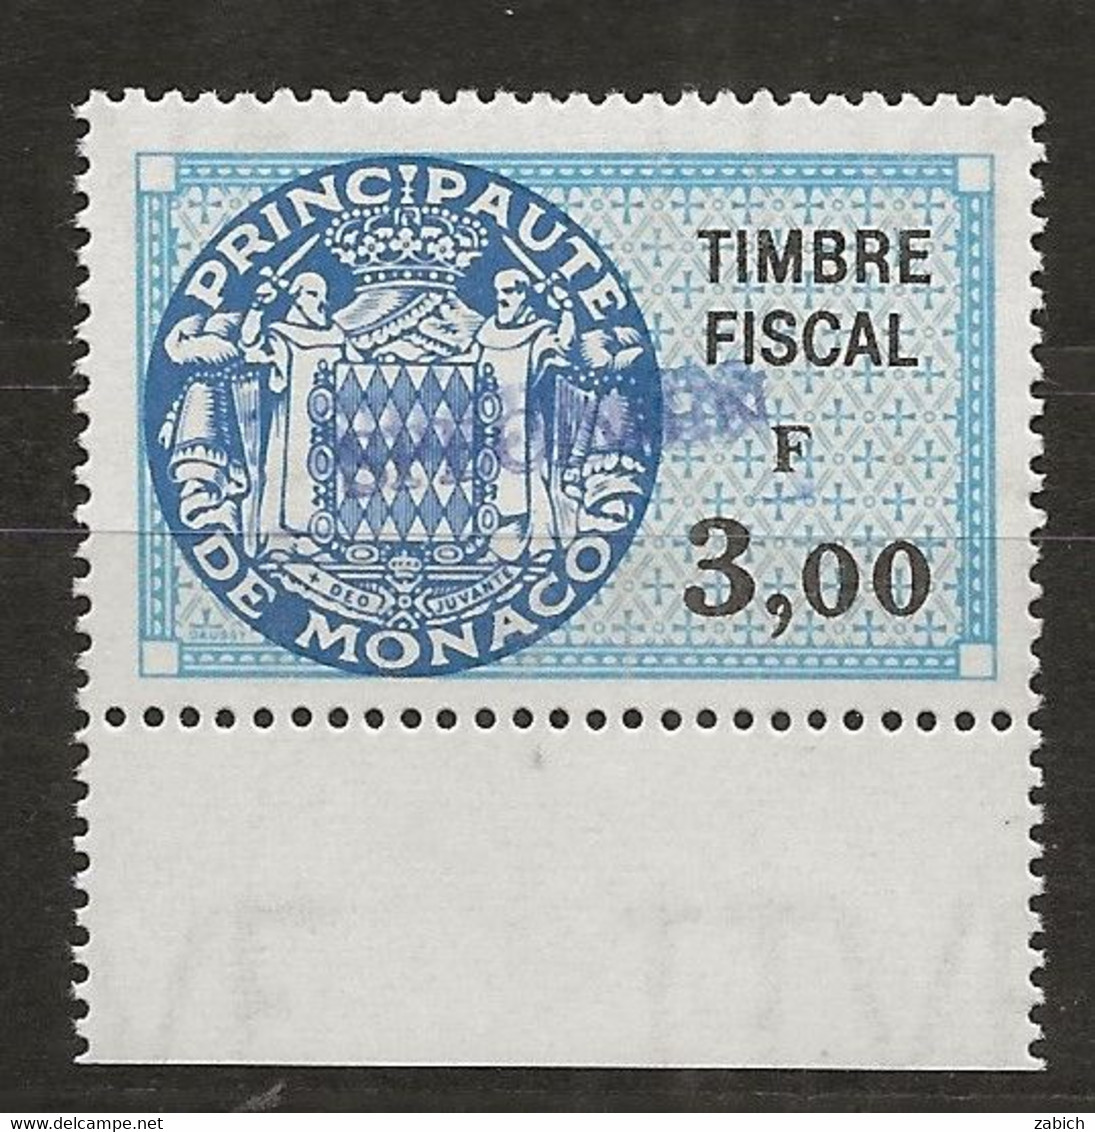 TIMBRES FISCAUX DE MONACO SERIE UNIFIEE N° 91 3 F Bleu Rare Surchargé Spécimen Neuf Gomme Mnh (**) - Revenue